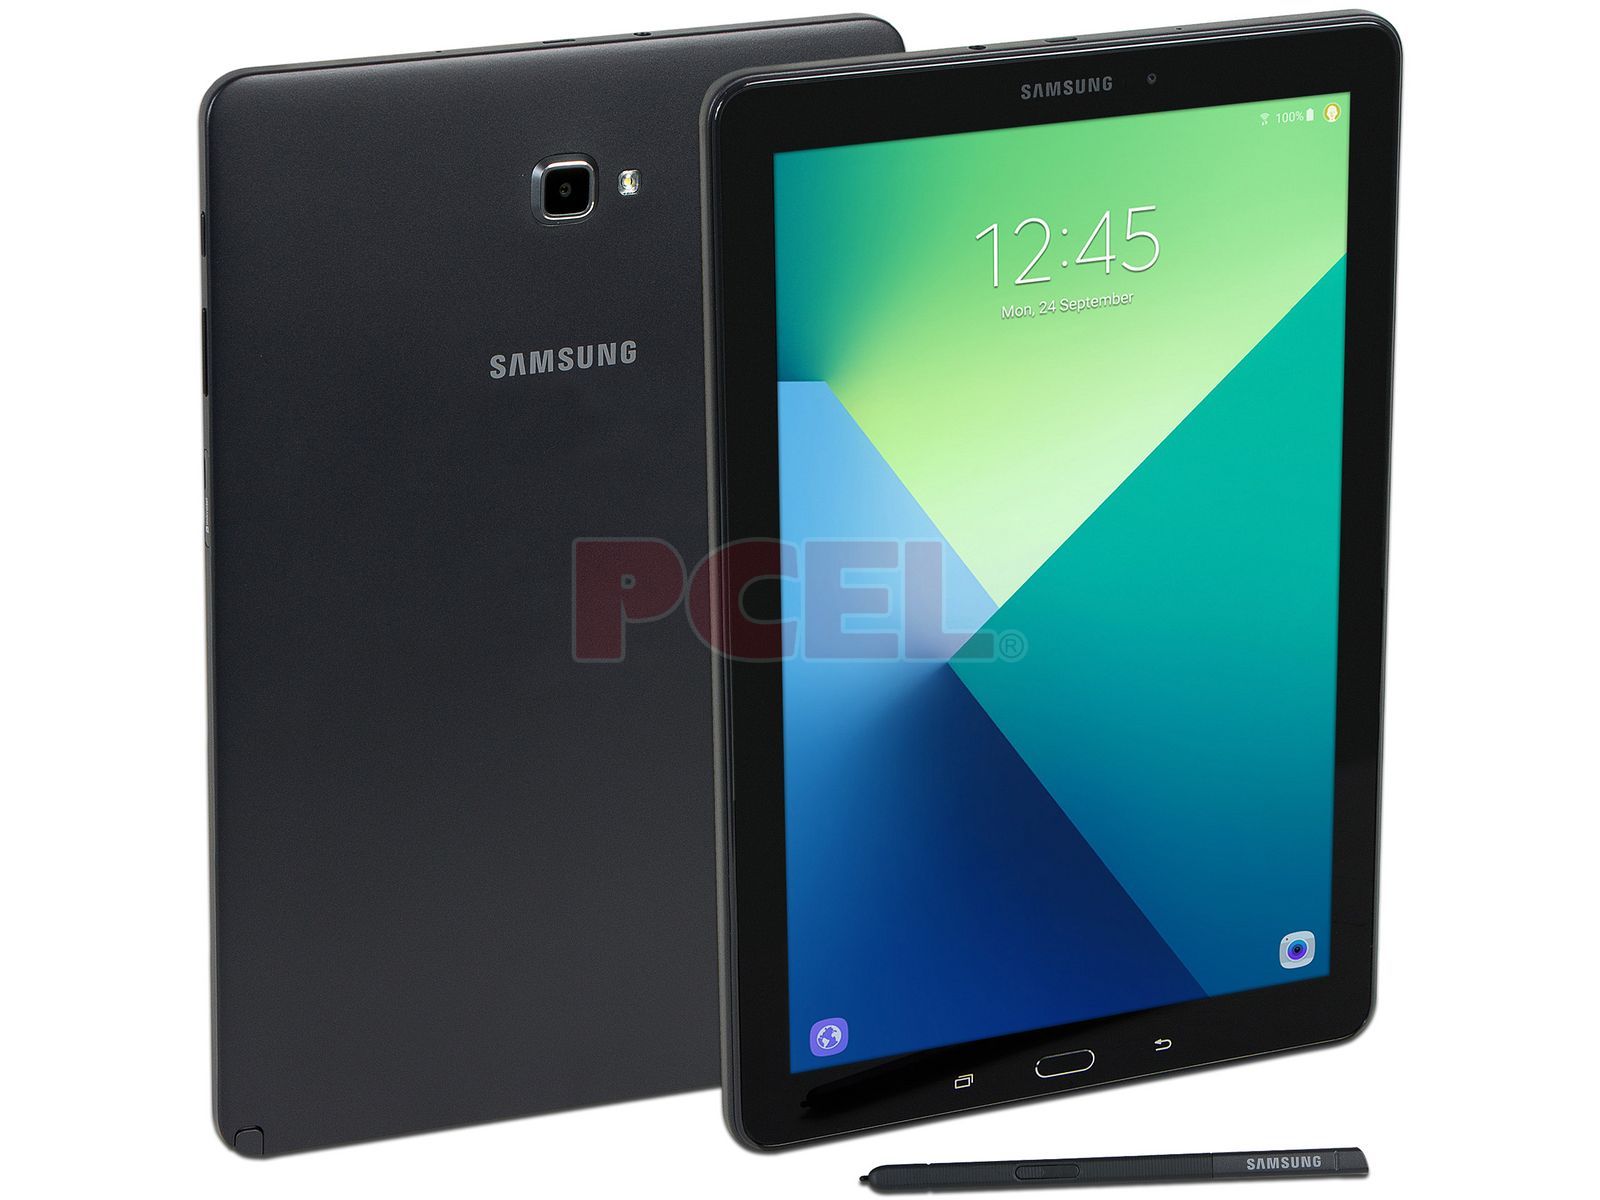 Sin aliento pasar por alto obvio Tablet Samsung Galaxy Tab A6 10.1: Procesador Octa Core 1.6 GHz, Memoria  RAM de 3GB, Almacenamiento de 16 GB, Pantalla de 10.1" (1900x1200),  Acelerómetro, Hall, Sensor Luz RGB, Android 6.0.